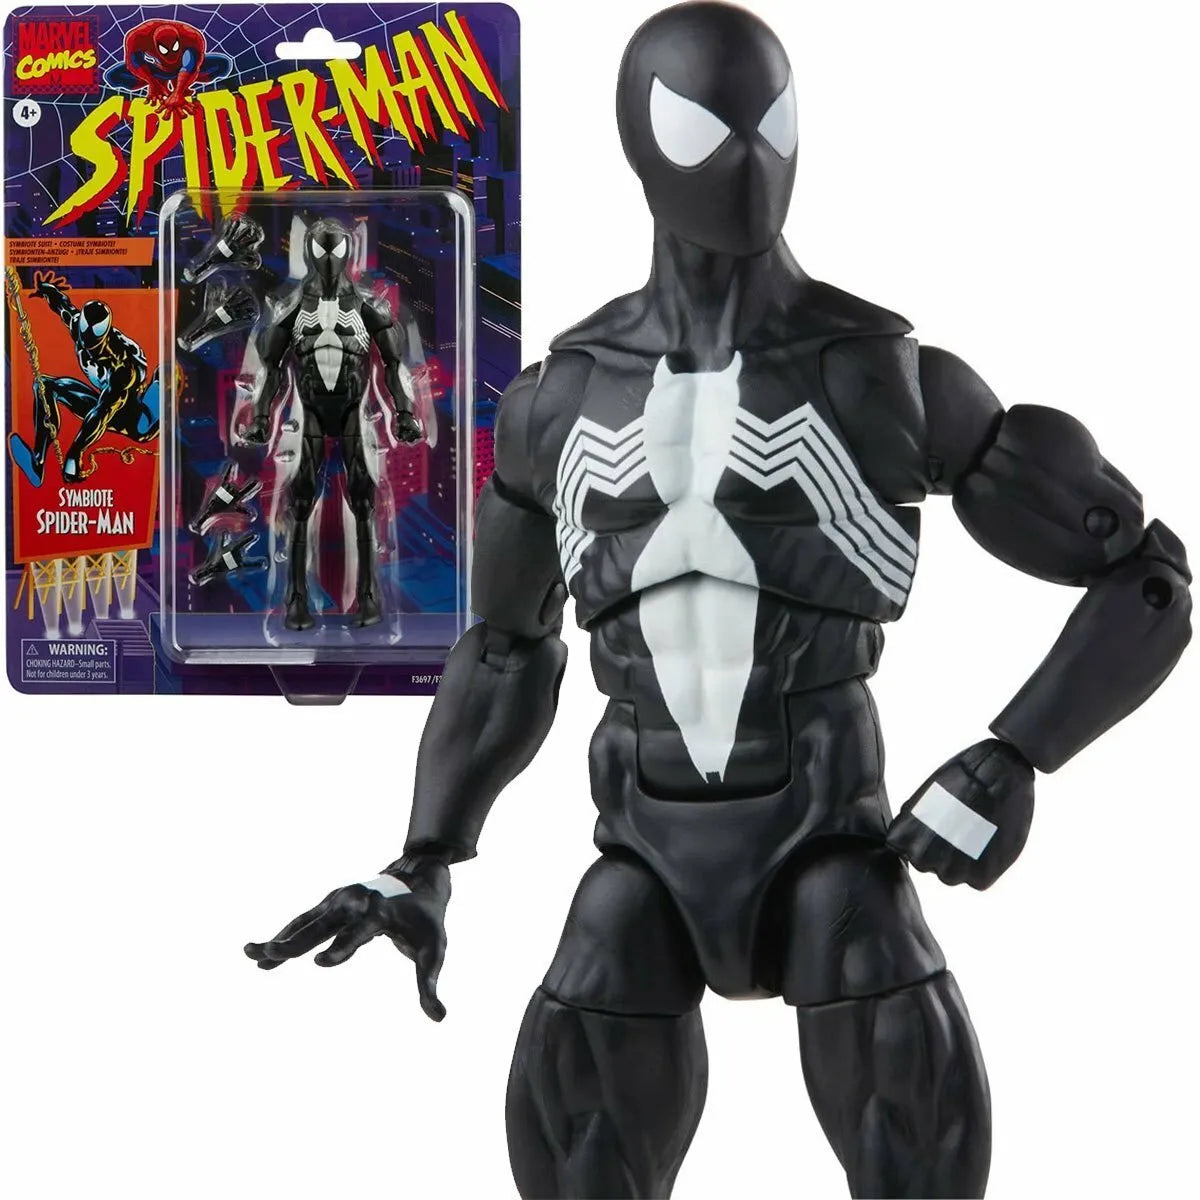 Marvel Legends - Retro Series Spider-Man - Symbiote Spider-Man Action Figure (6 inch)